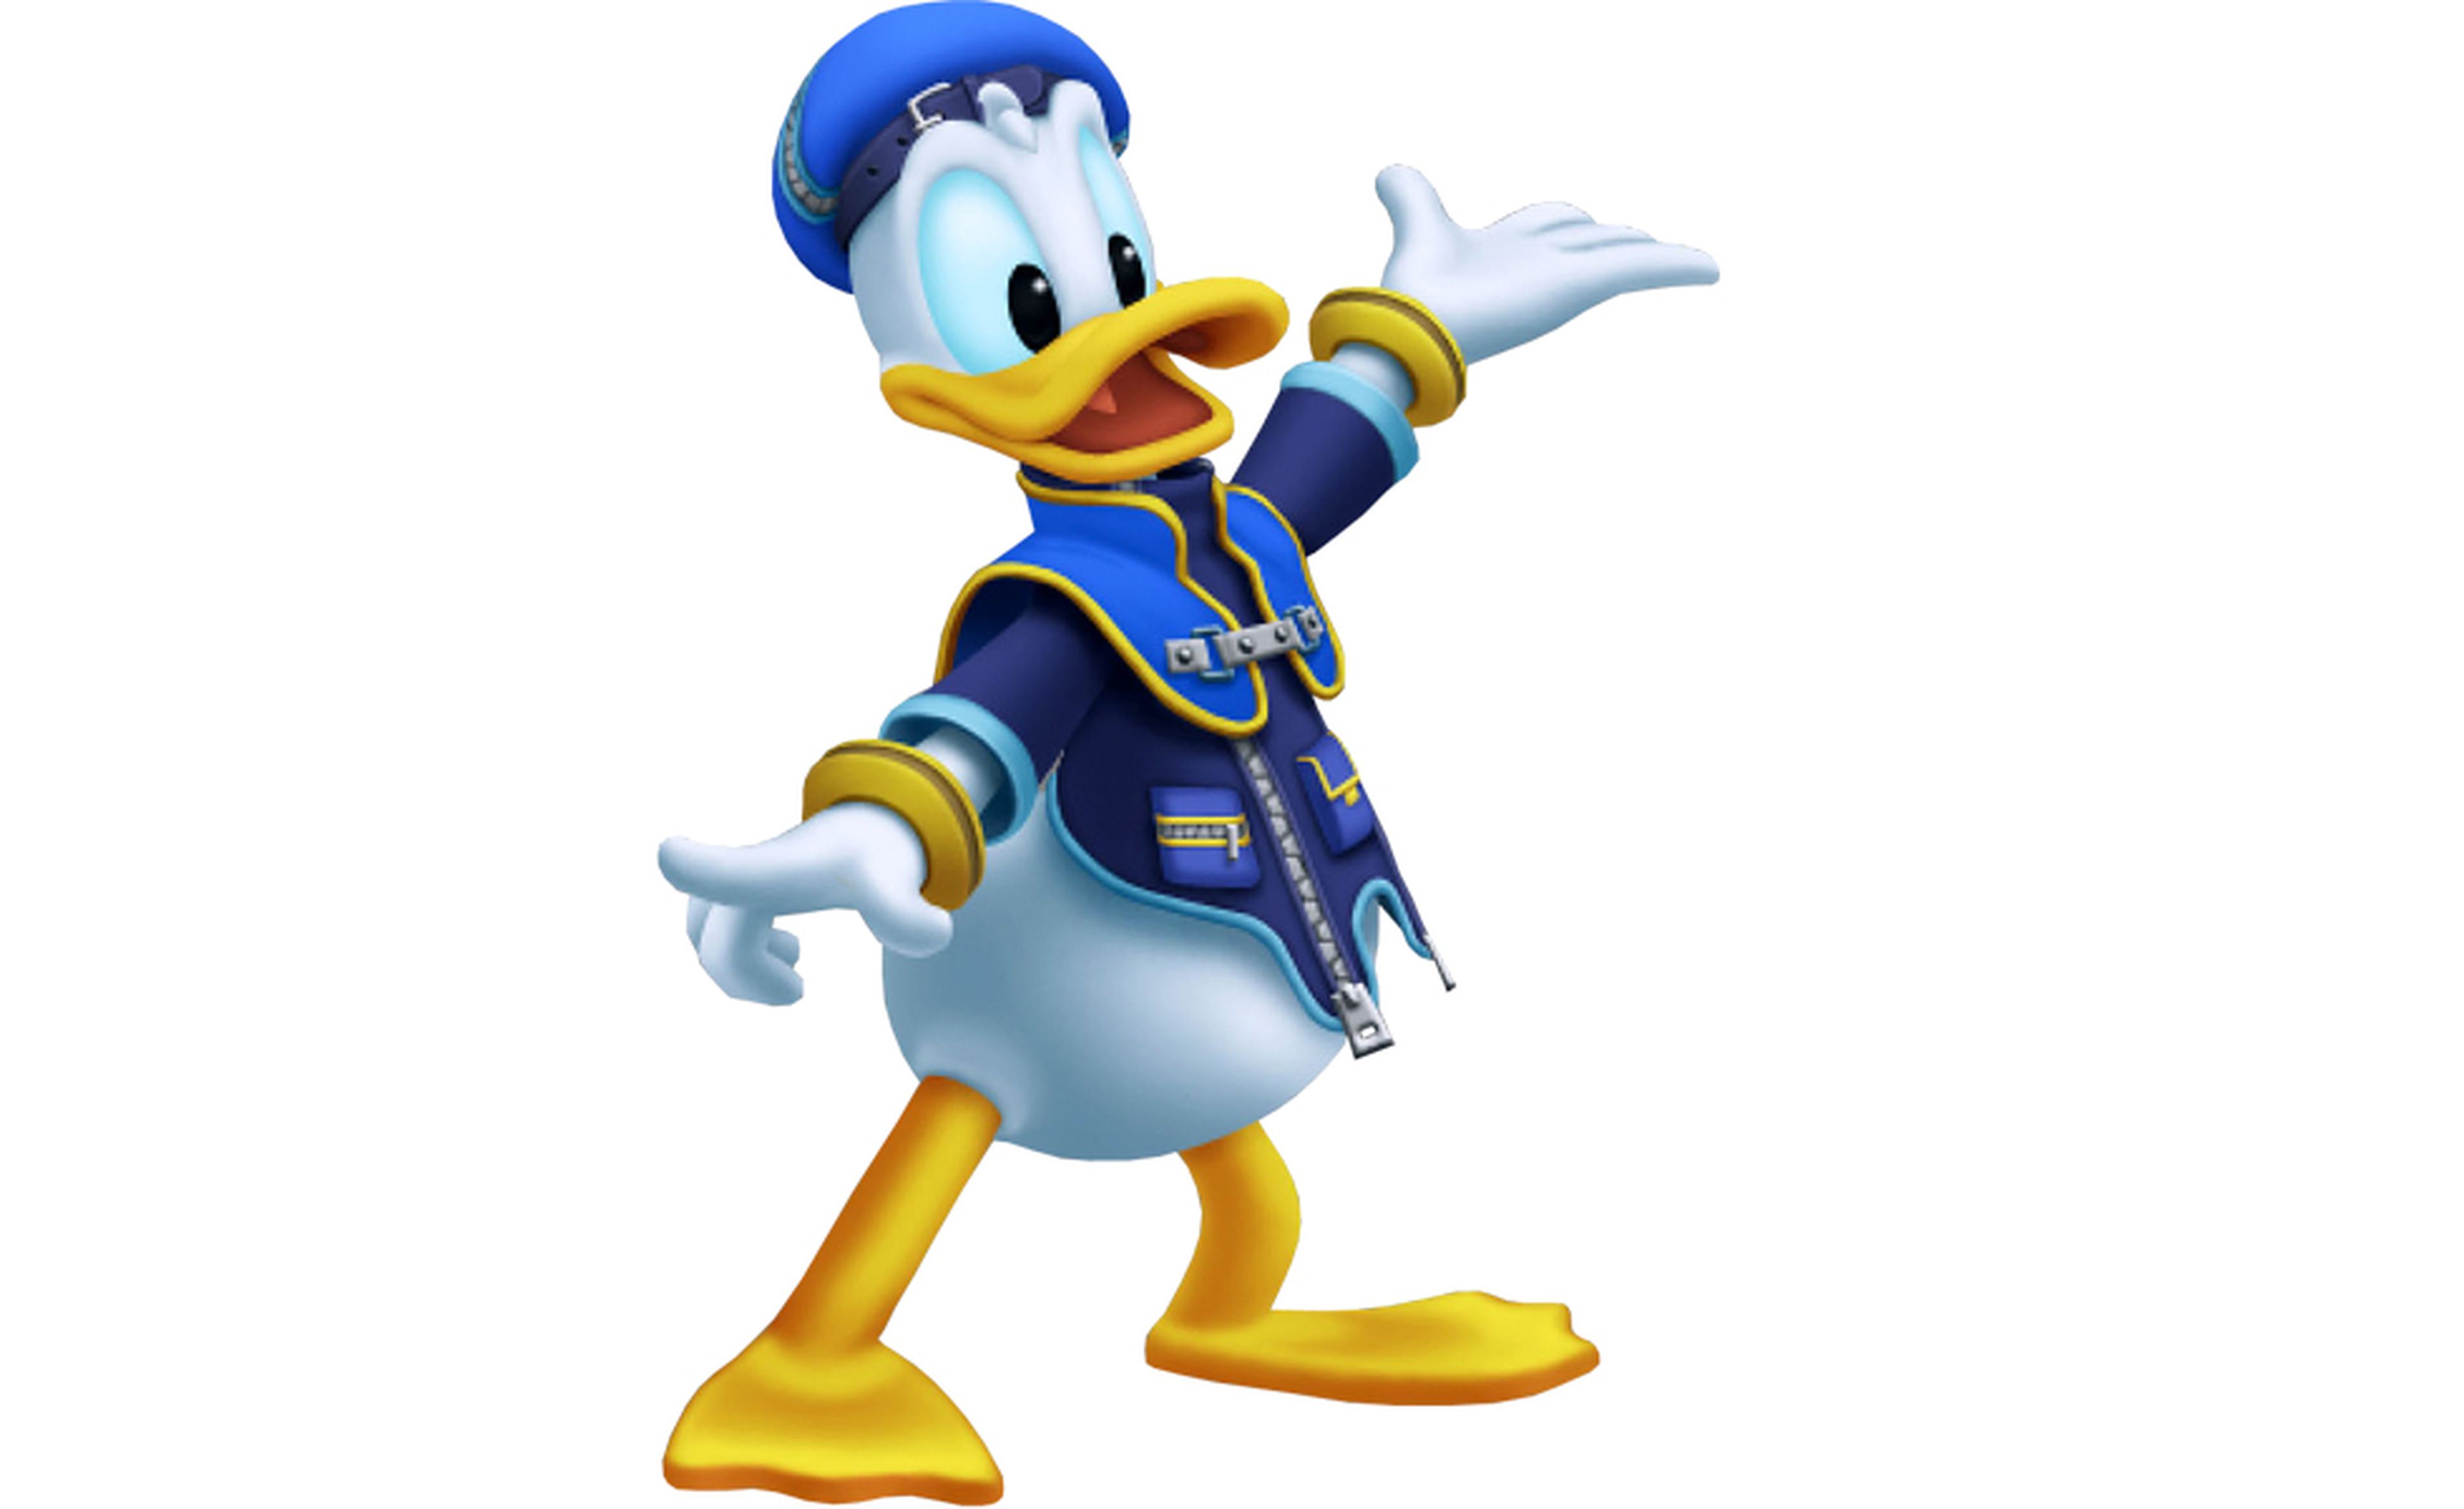 Donald Kingdom Hearts